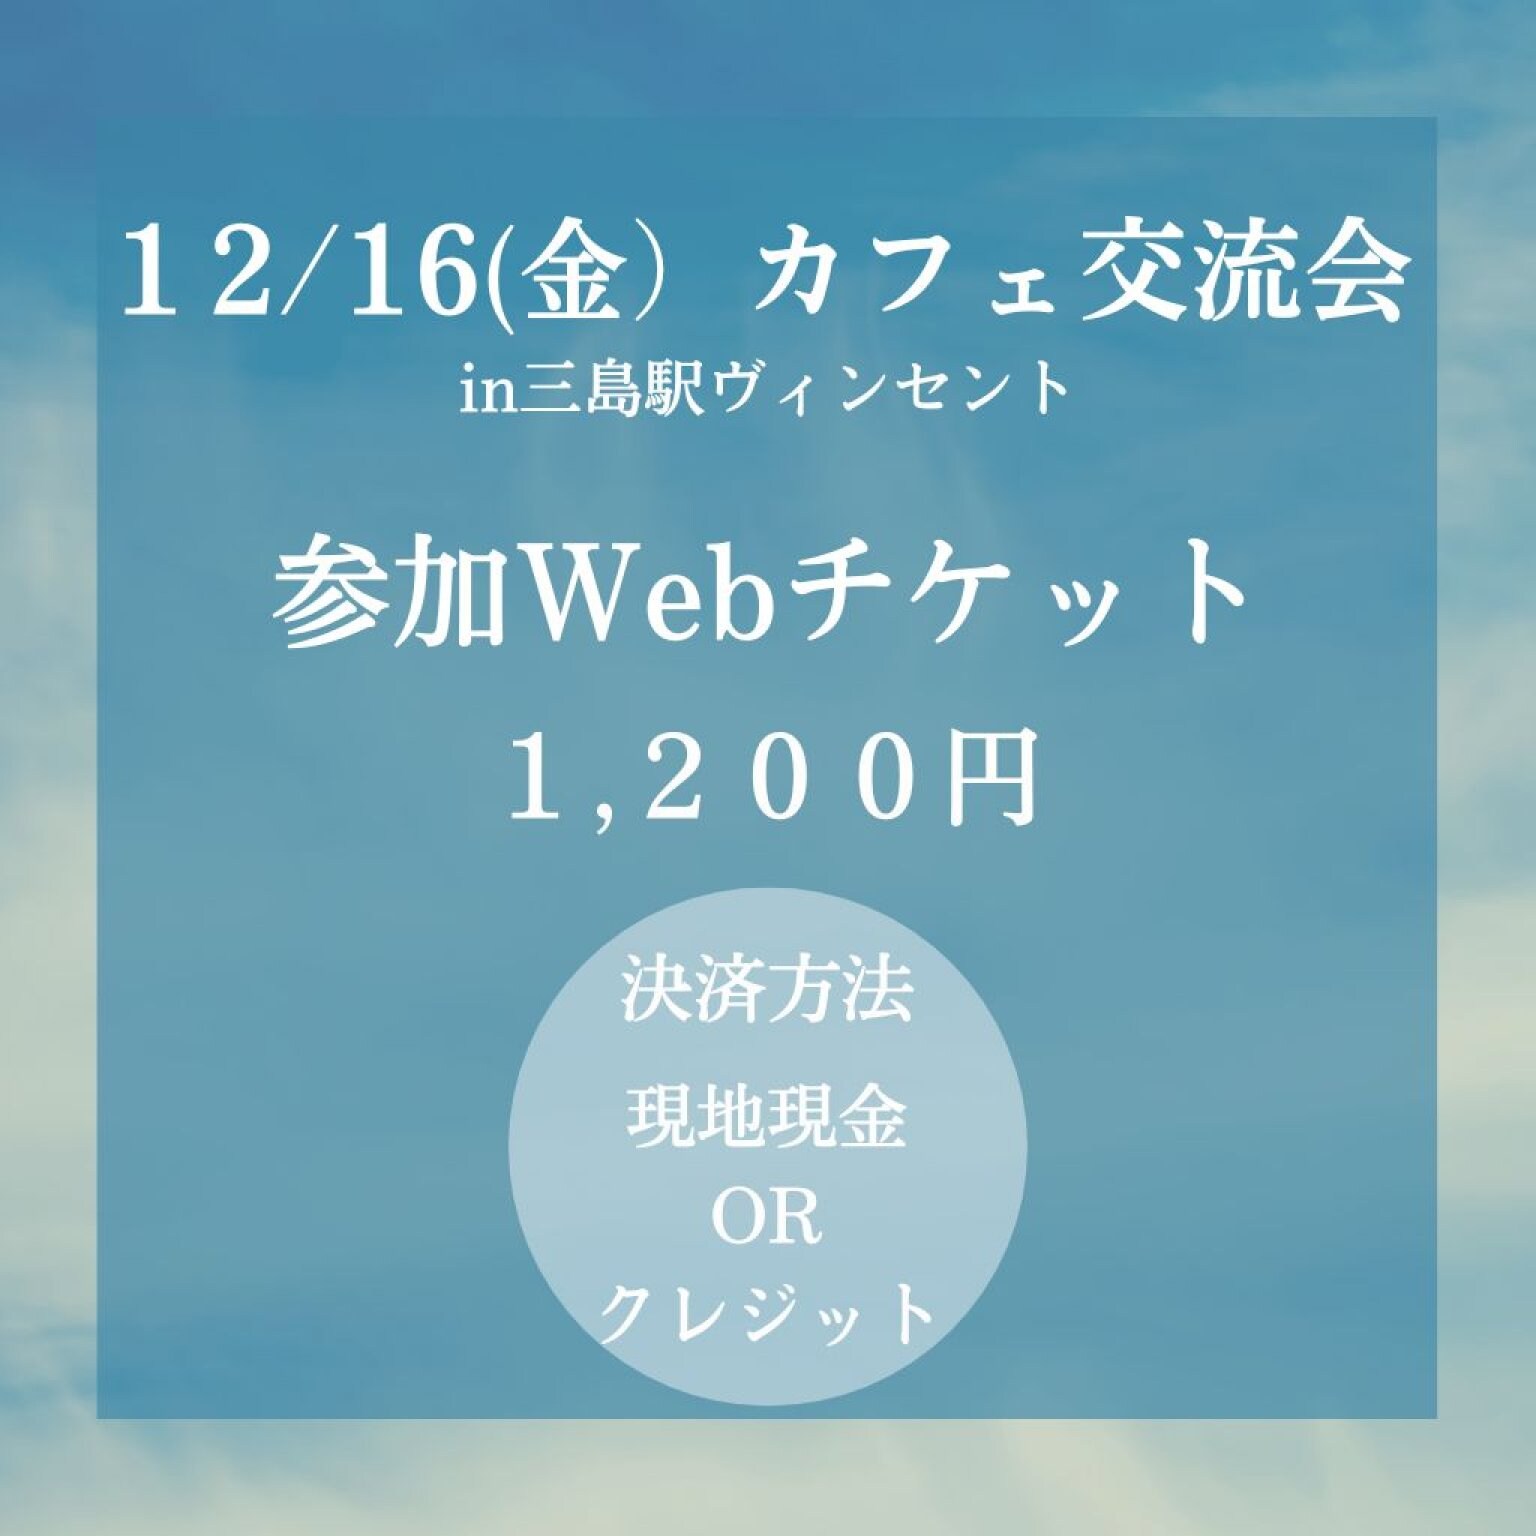 12/16(金)カフェ交流会in三島駅ヴィンセント参加チケット